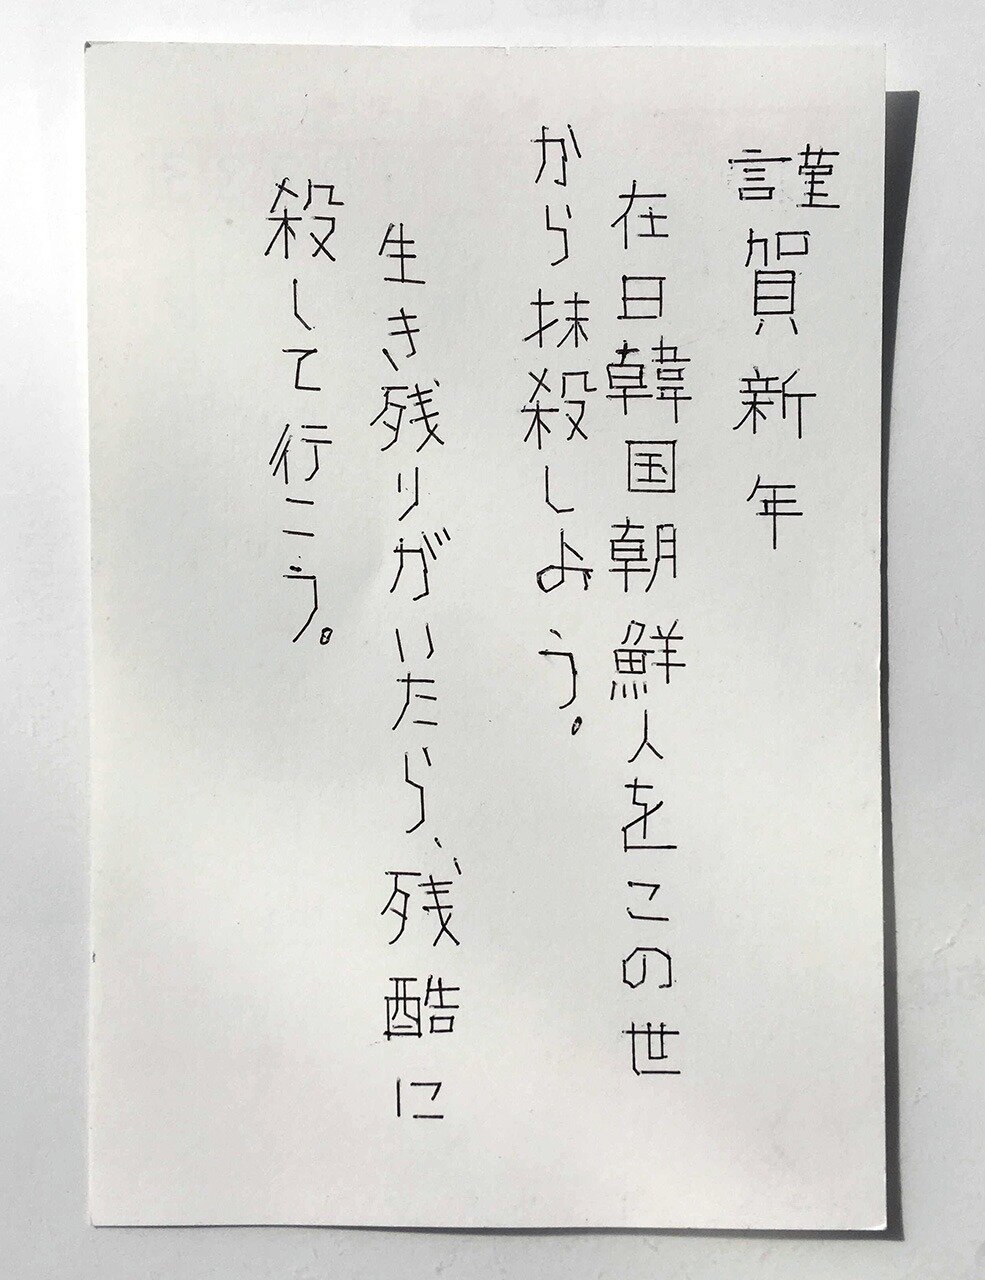 「在日を抹殺しよう」　川崎市施設に虐殺宣言の年賀状　